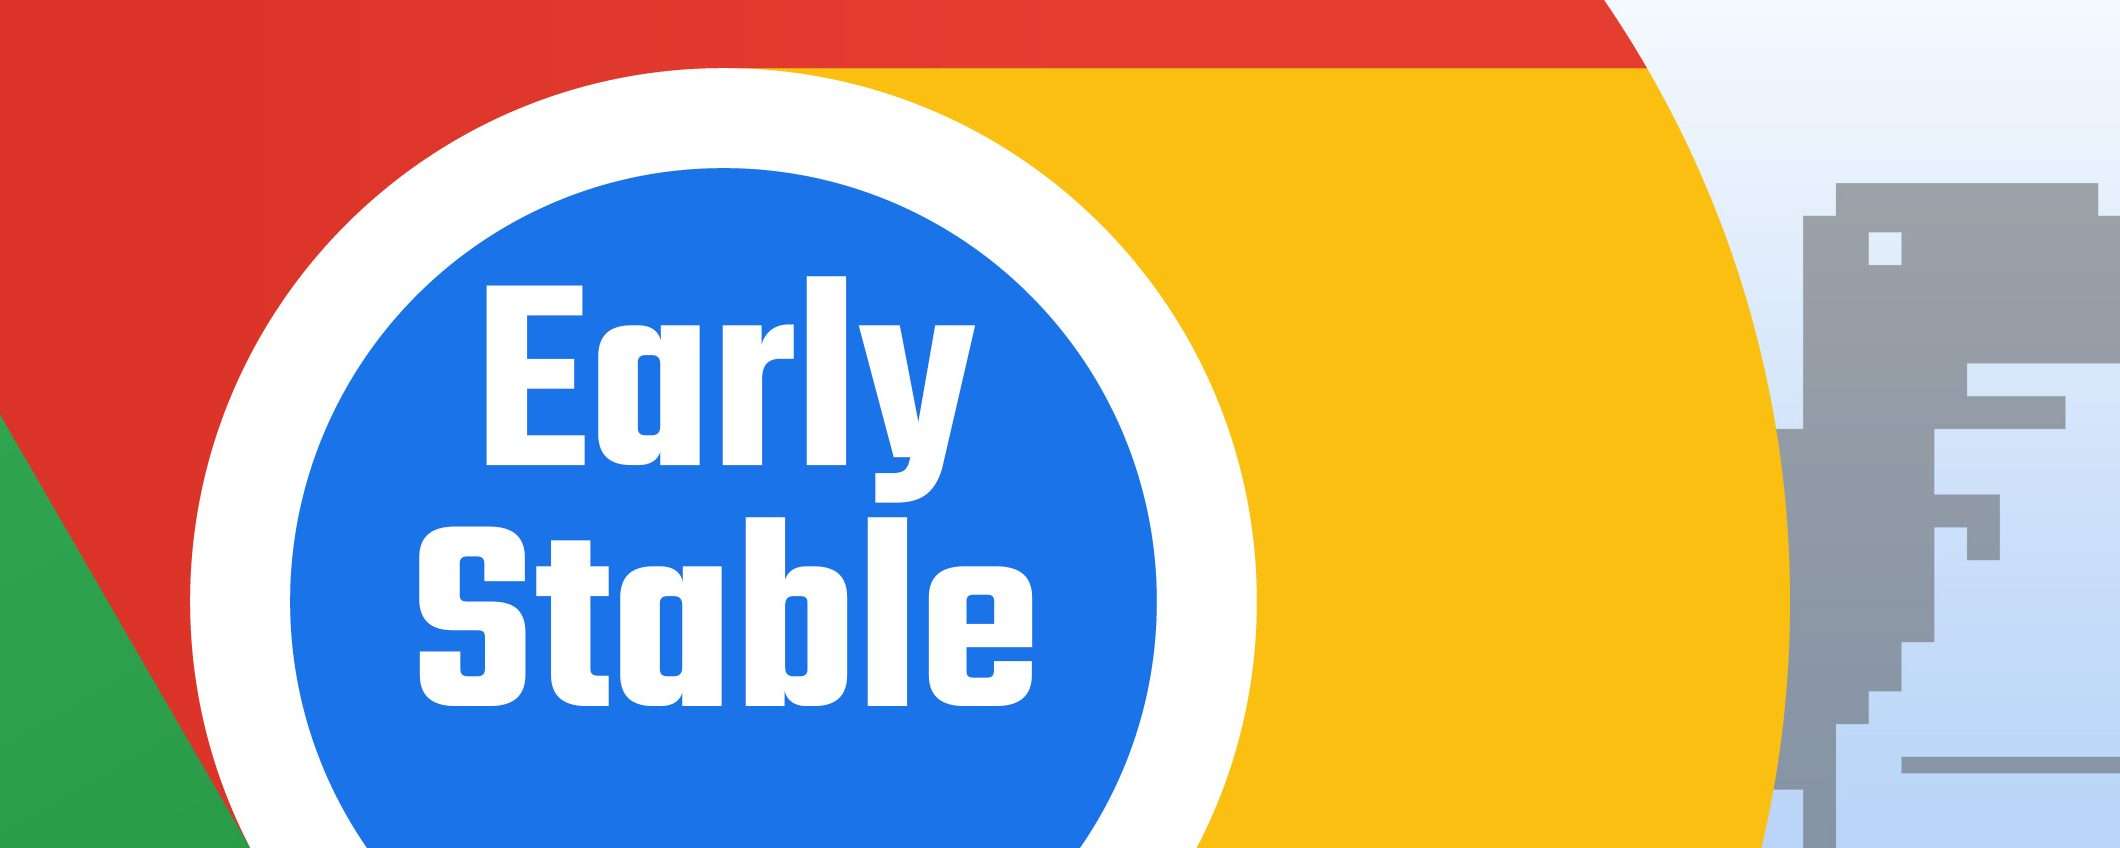 Chrome Early Stable, la nuova versione del browser